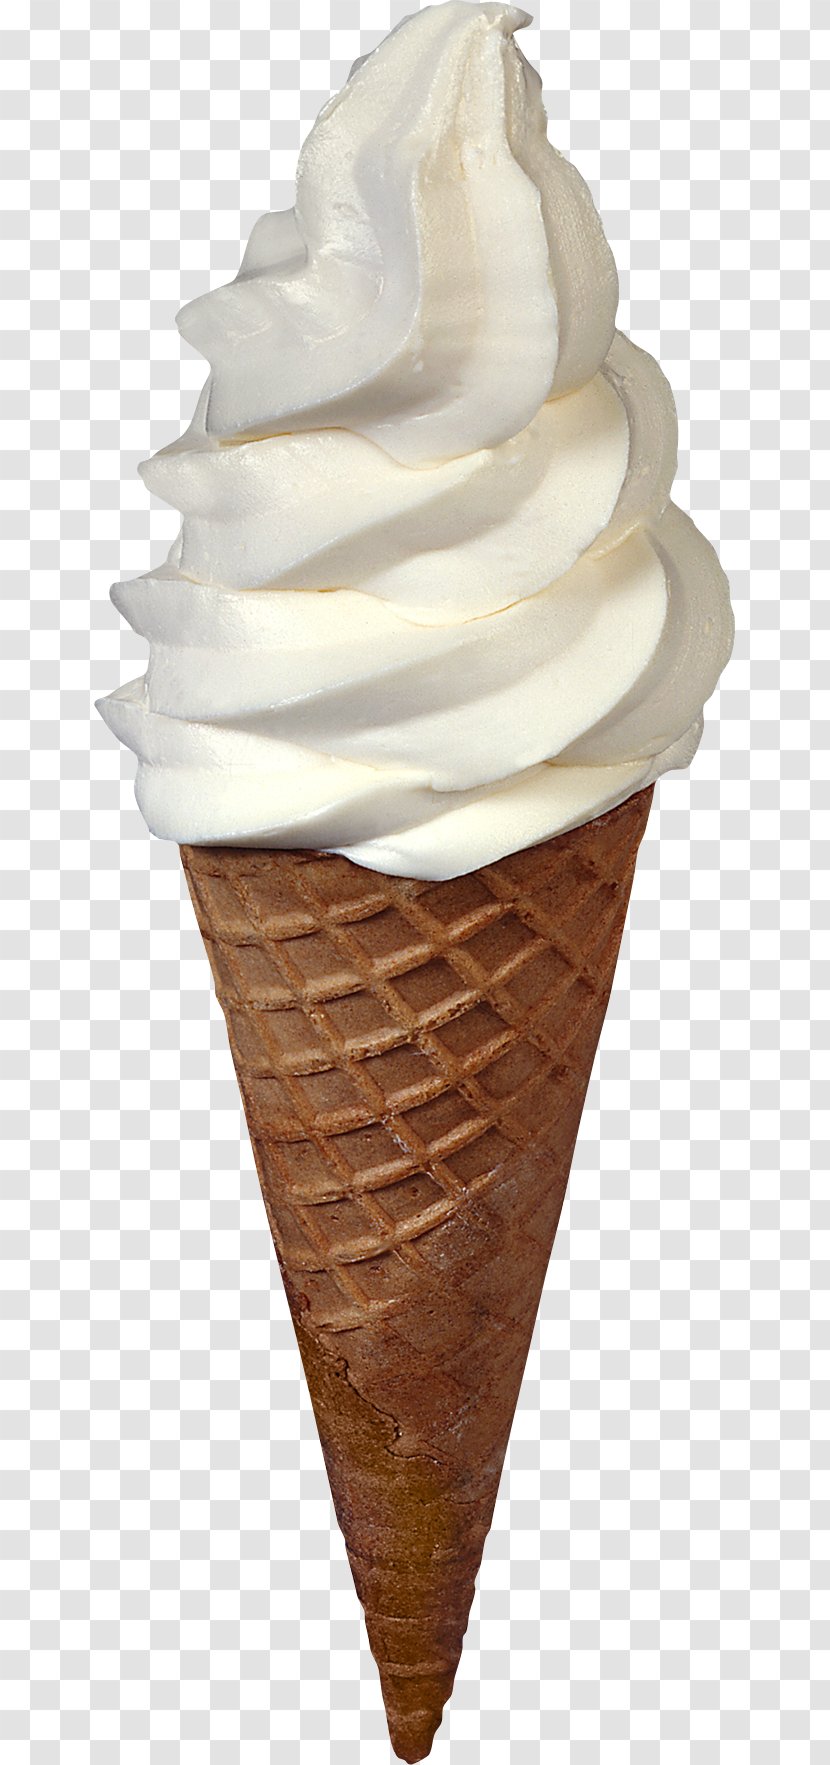 Ice Cream Cone Neapolitan Sundae - Parfait - Image Transparent PNG